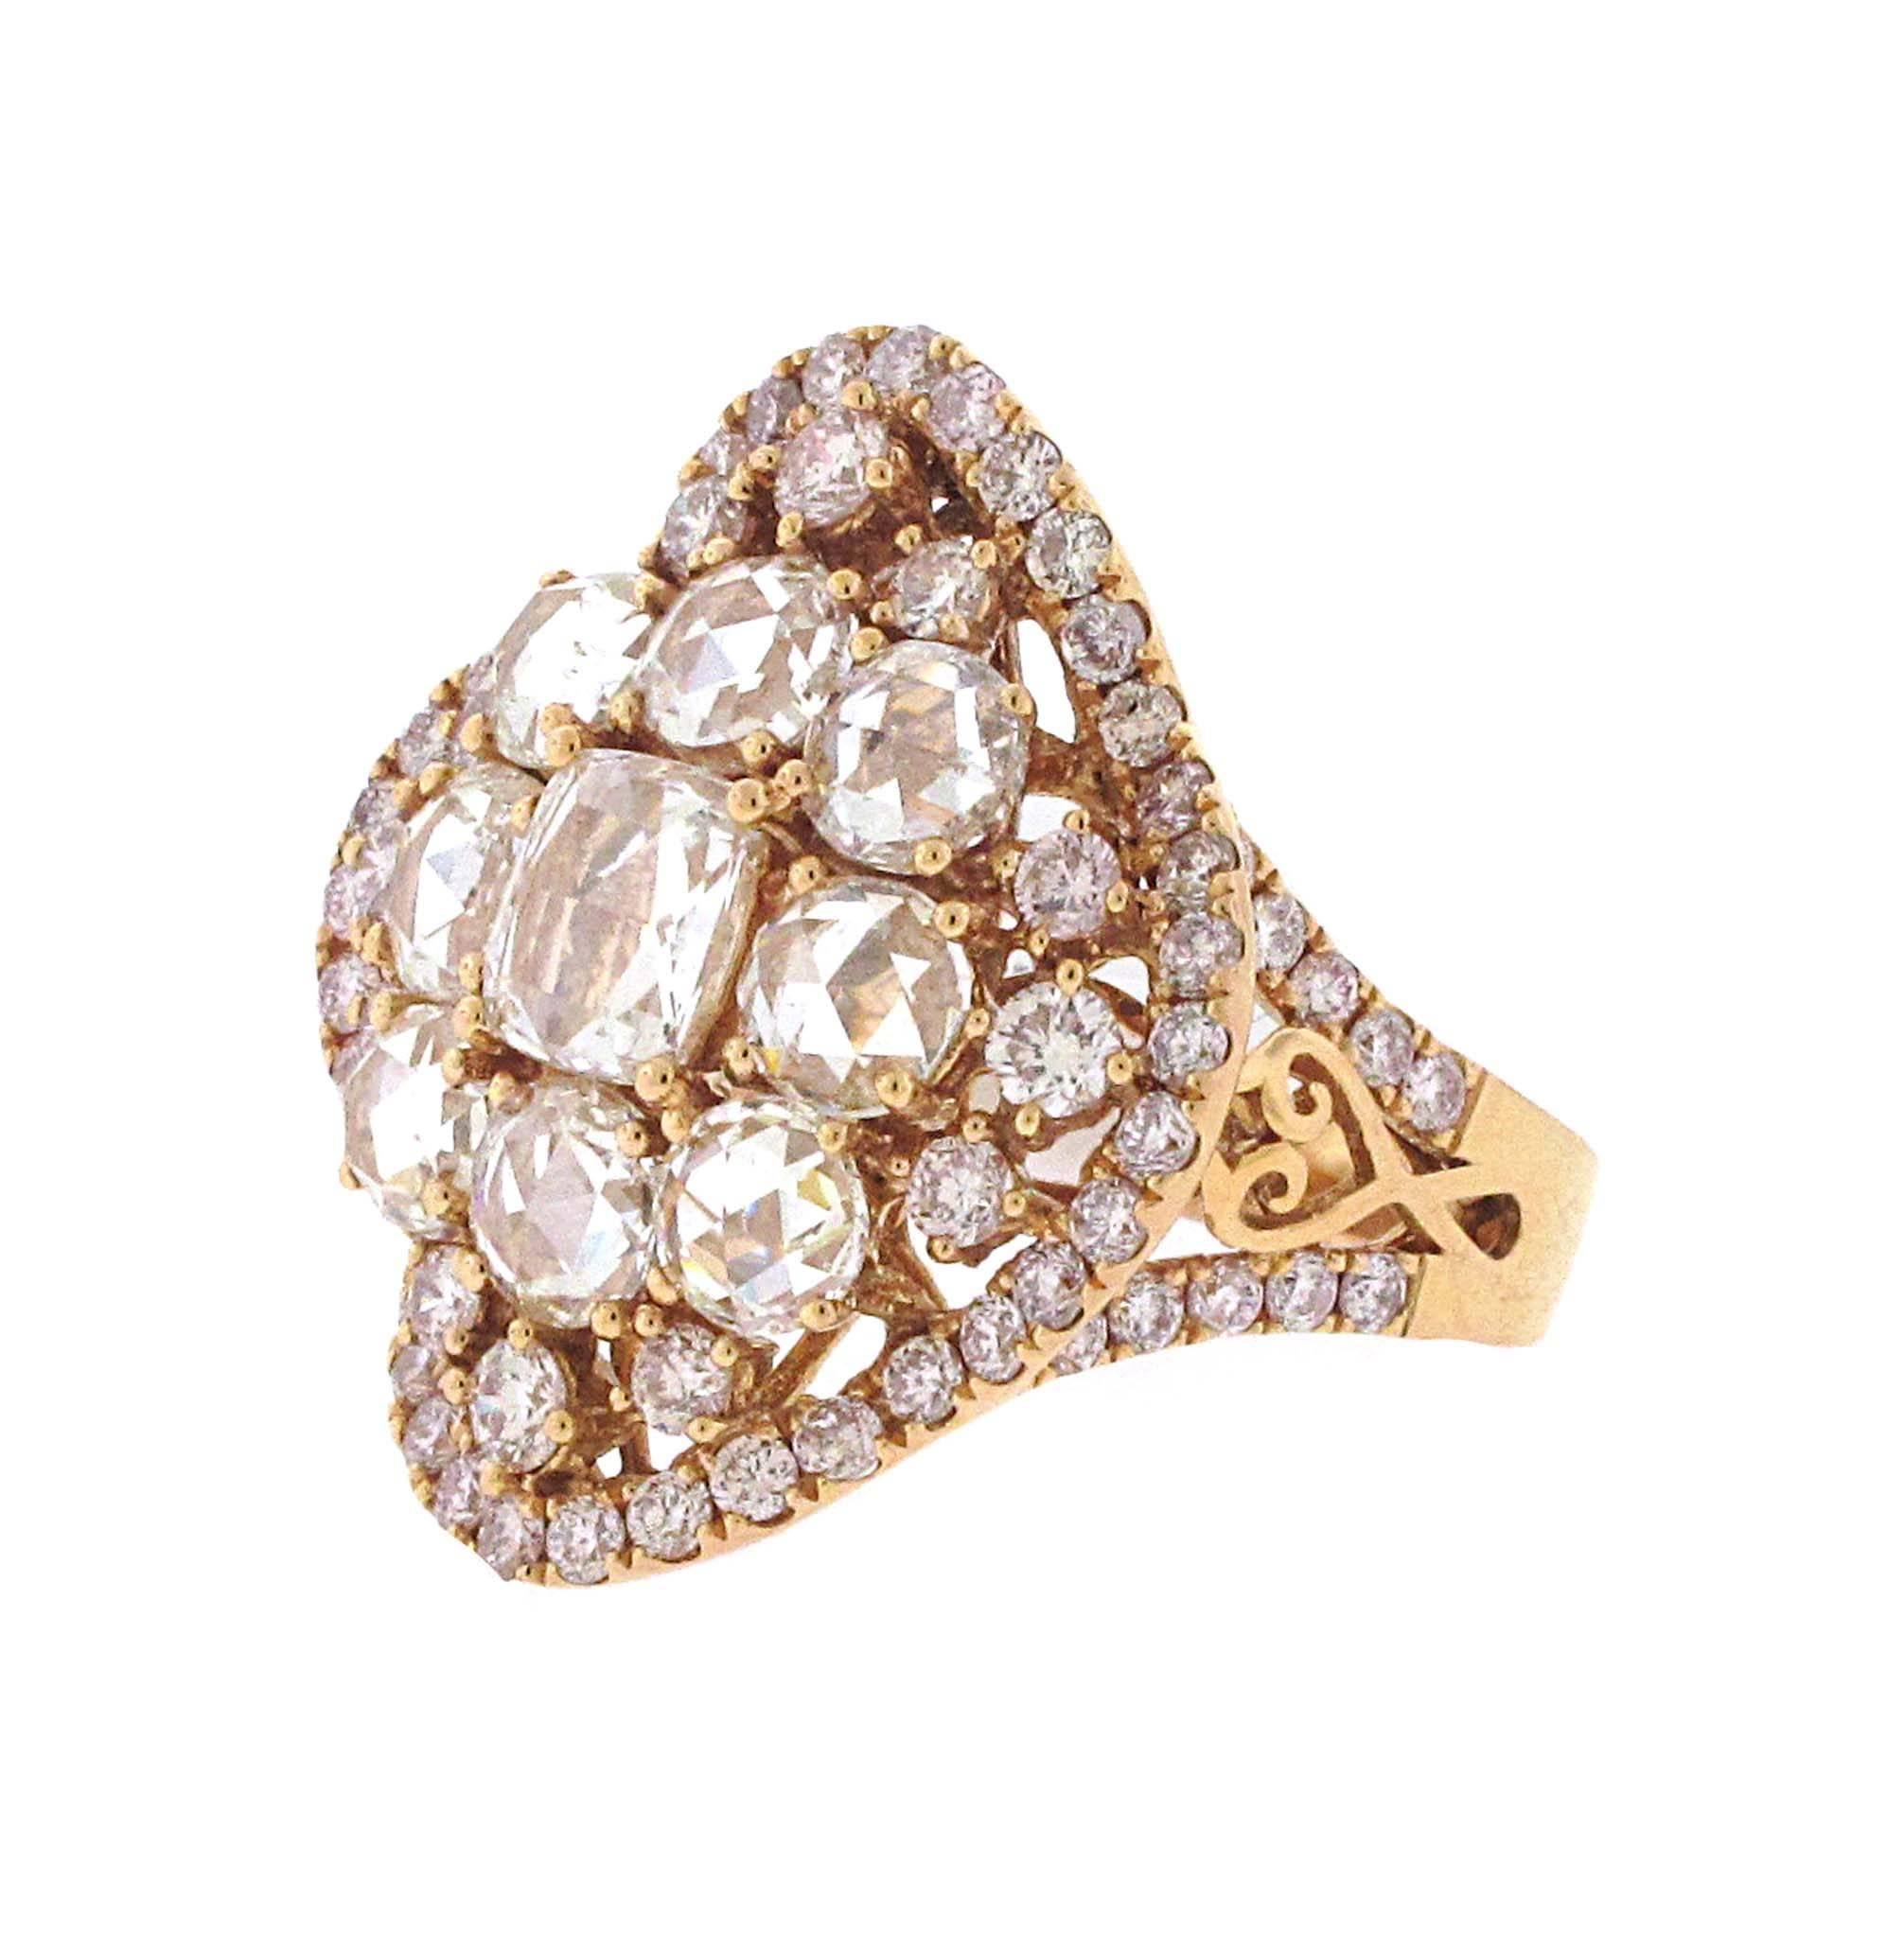 Modern 18 Karat Rose Gold Rose Cut Diamond Ring, over 5 Carat Total